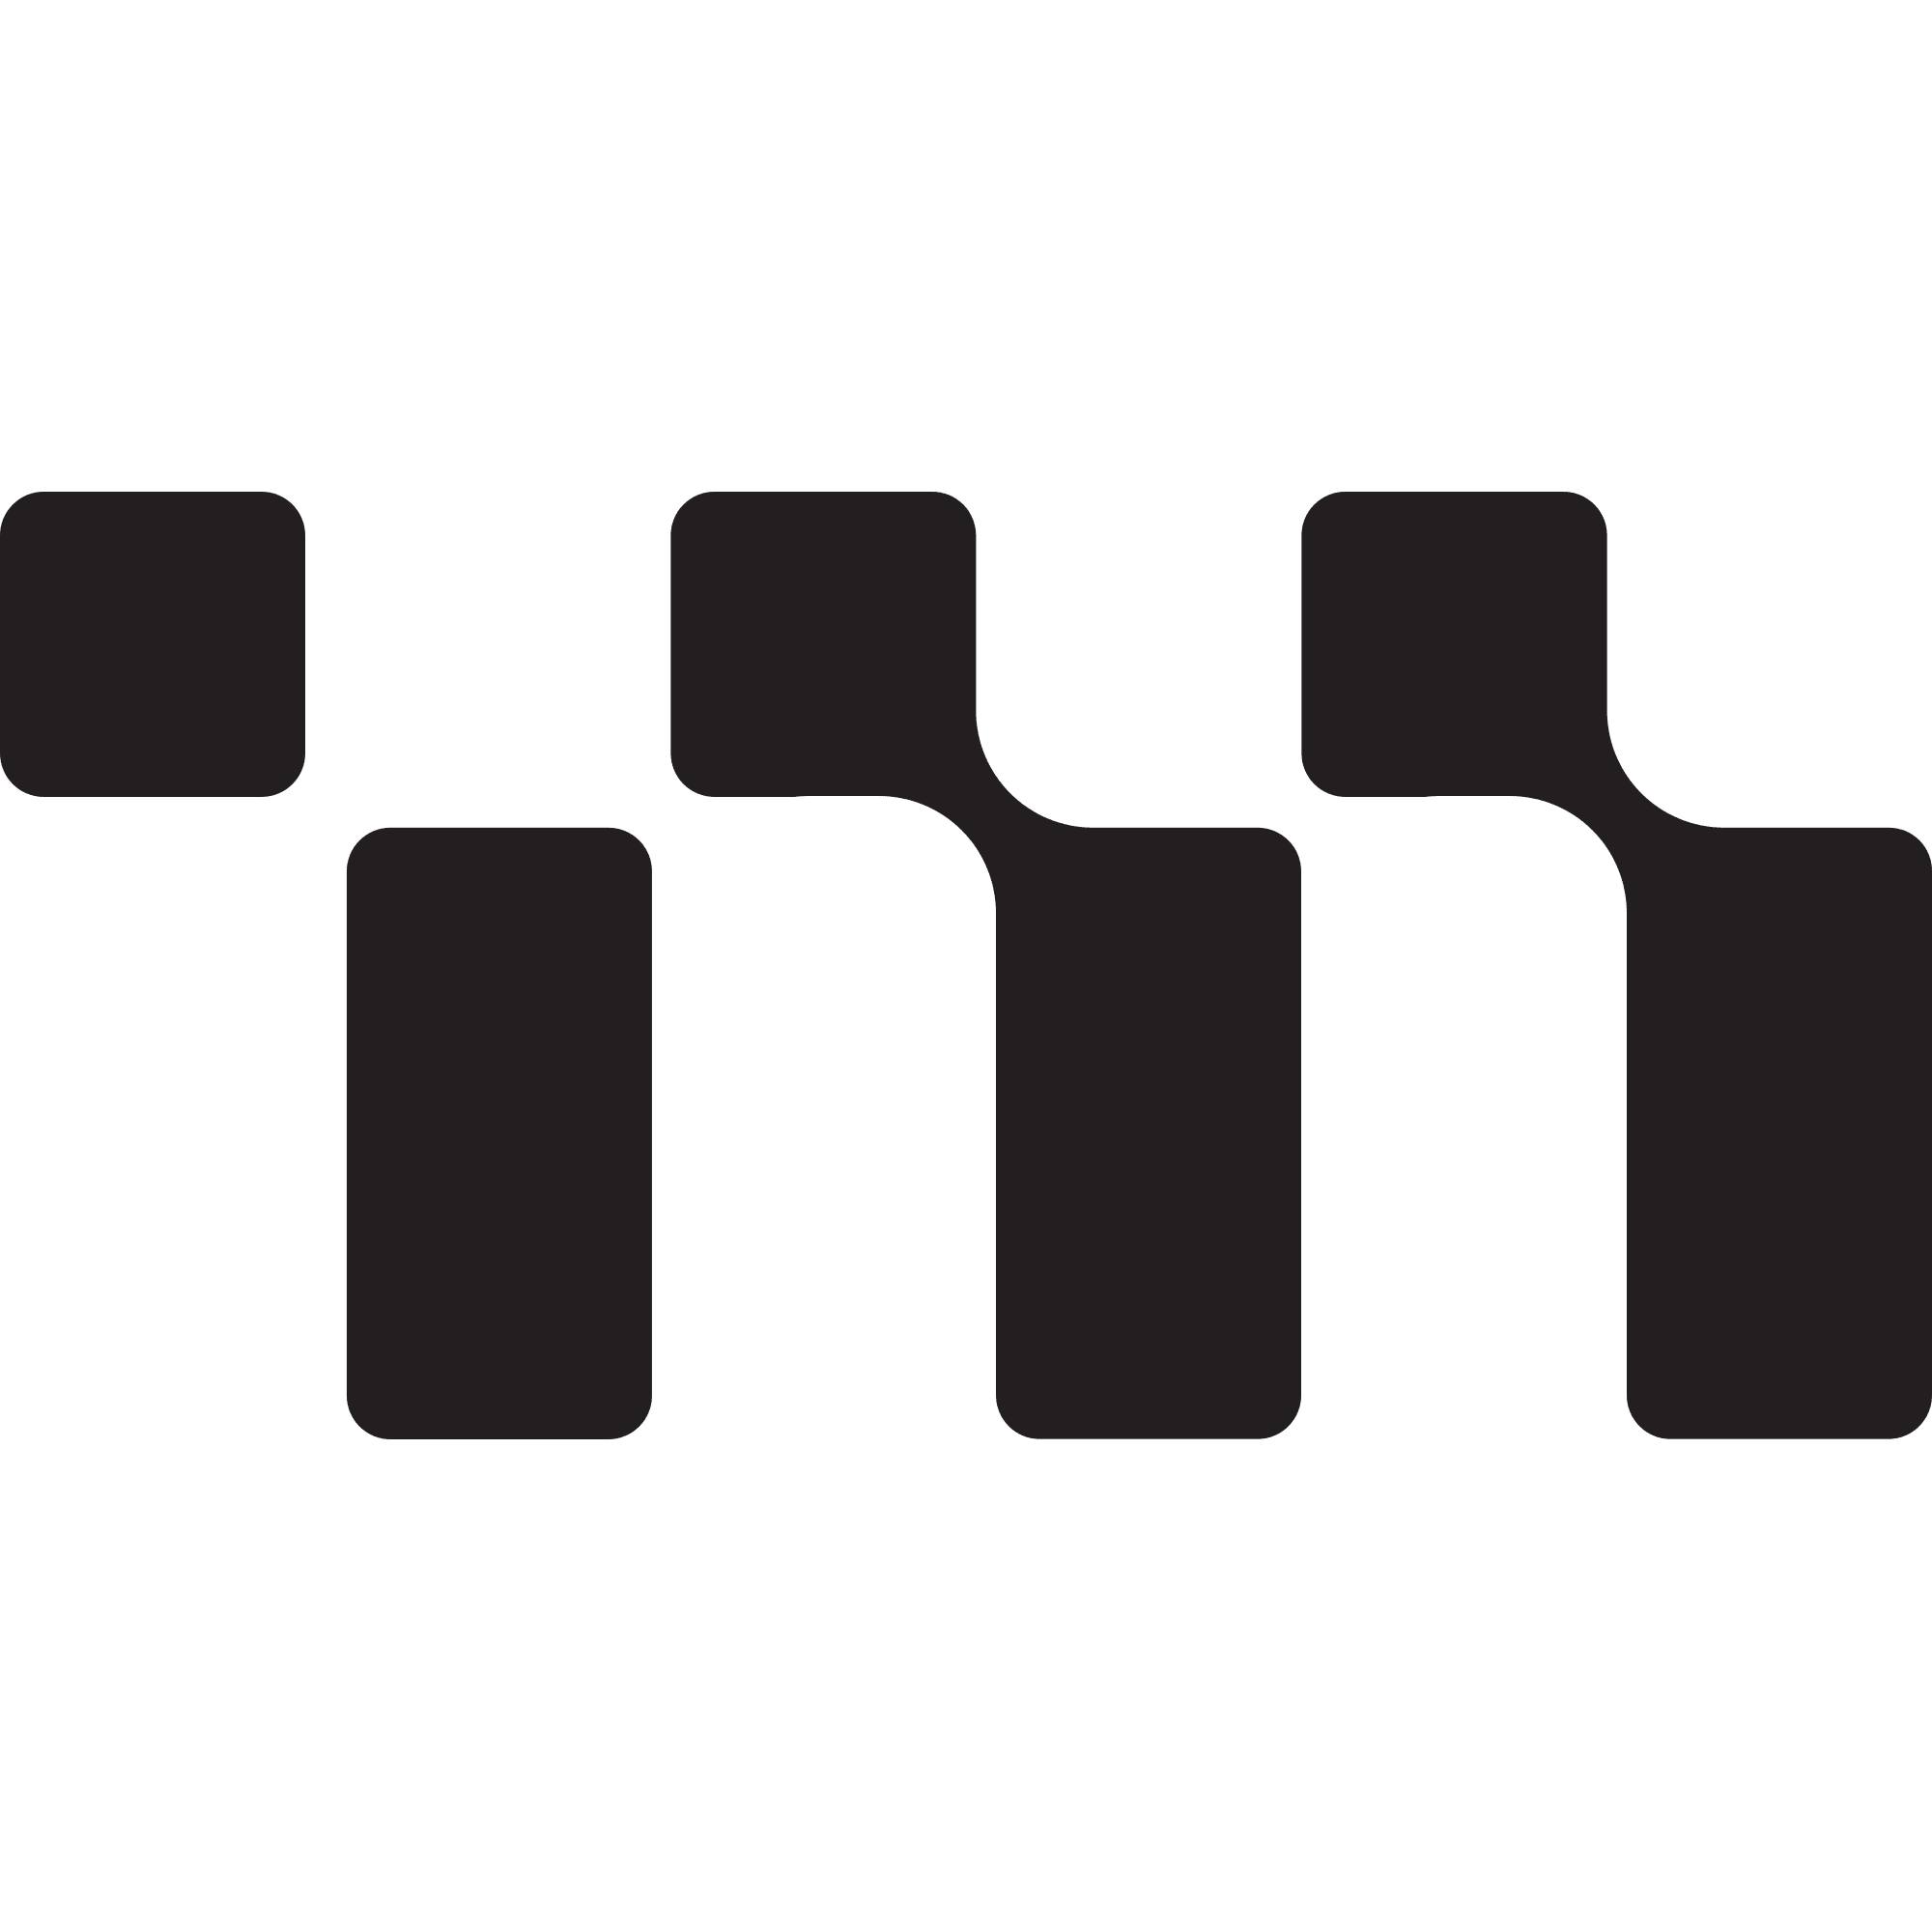 Metadium logo in png format